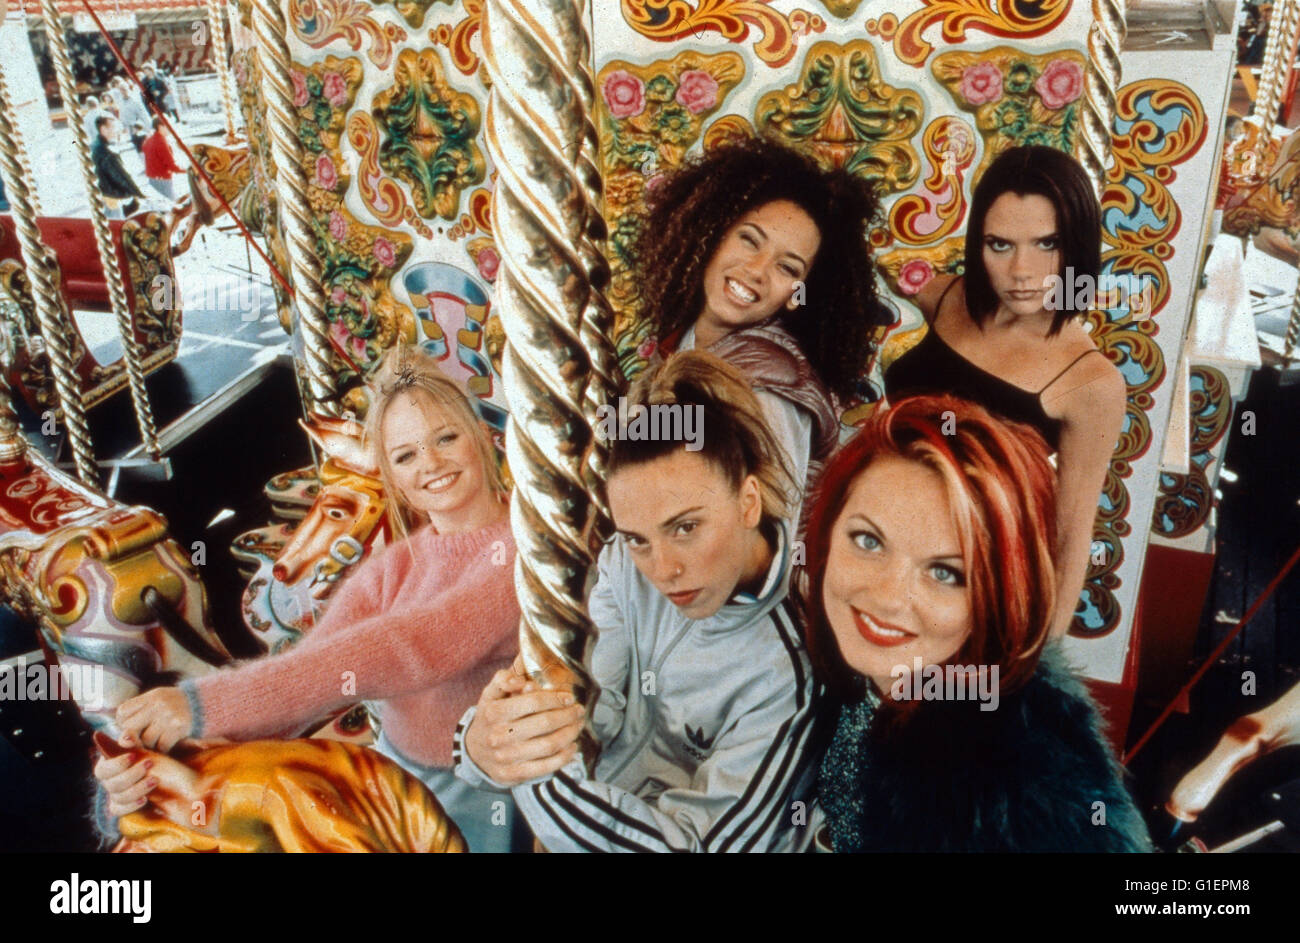 Die britische Girlband Spice Girls, bestehend aus Victoria Adams, Melanie Brown, Emma Bunton, Melanie Chisholm und Geraldine Halliwell, Großbritannien 1990er Jahre. British girl pop band Spice Girls, Great Britain 1990s. Stock Photo